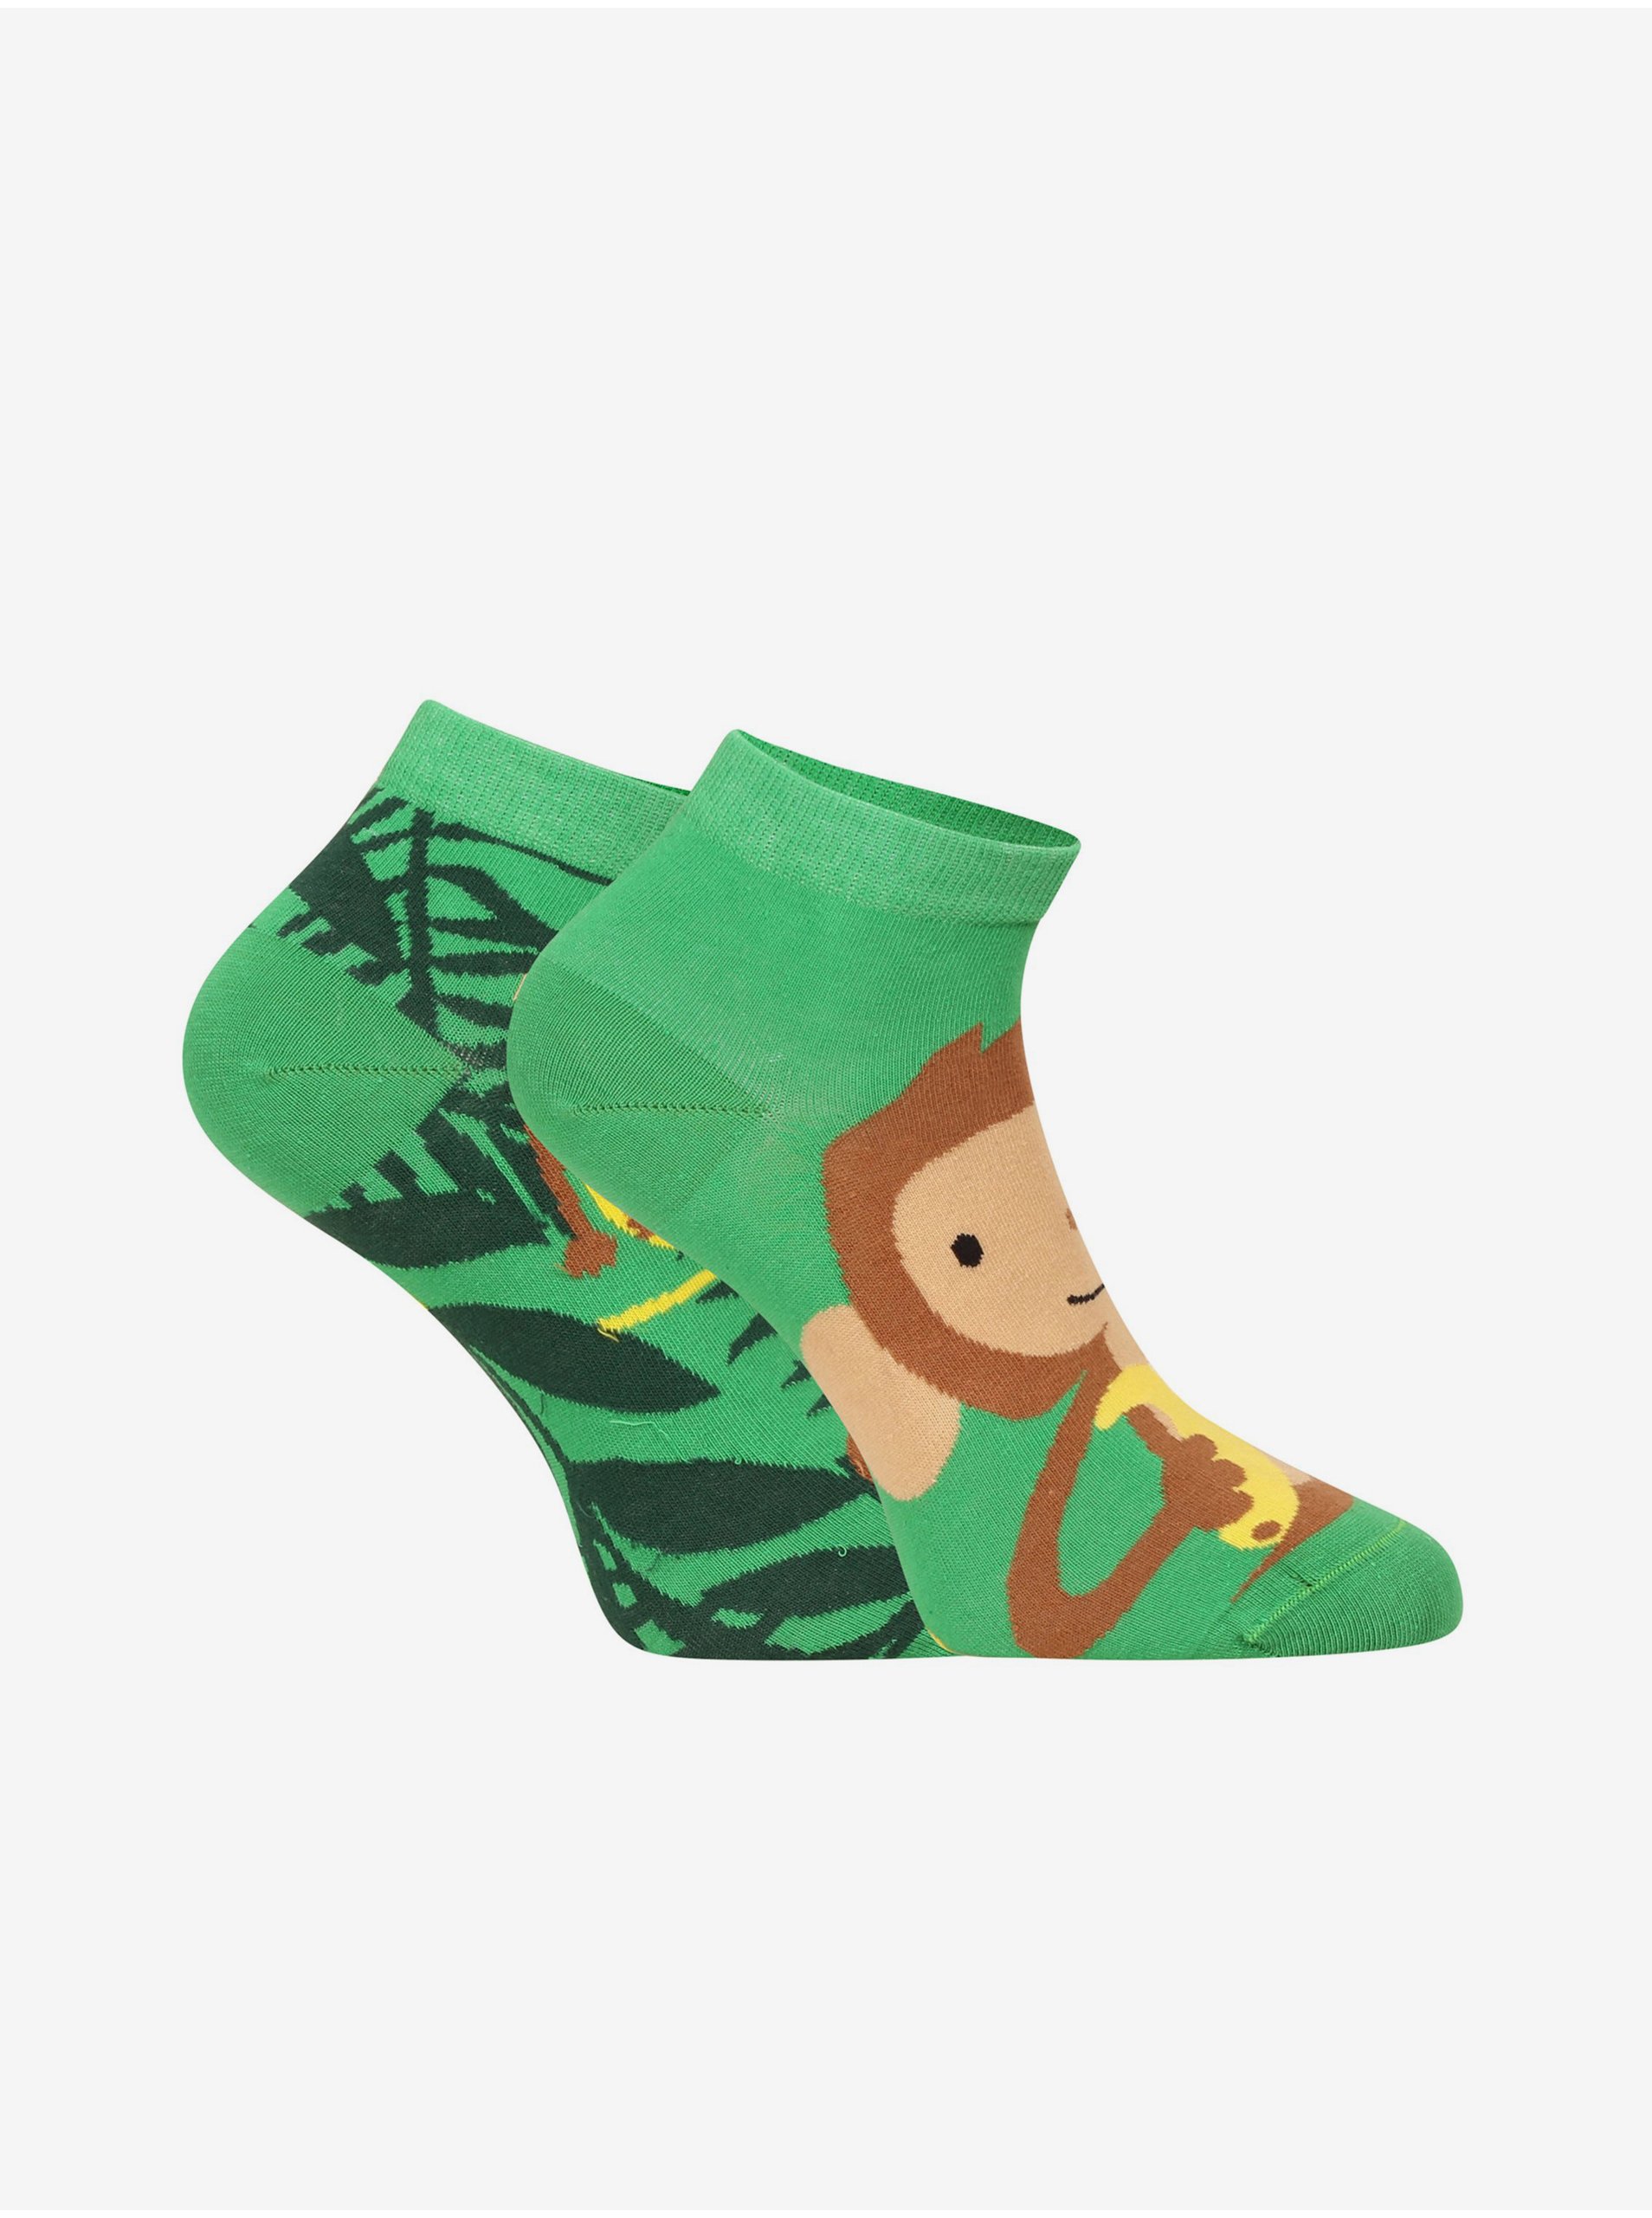 Lacno Ponožky pre mužov Dedoles - zelená, hnedá, žltá